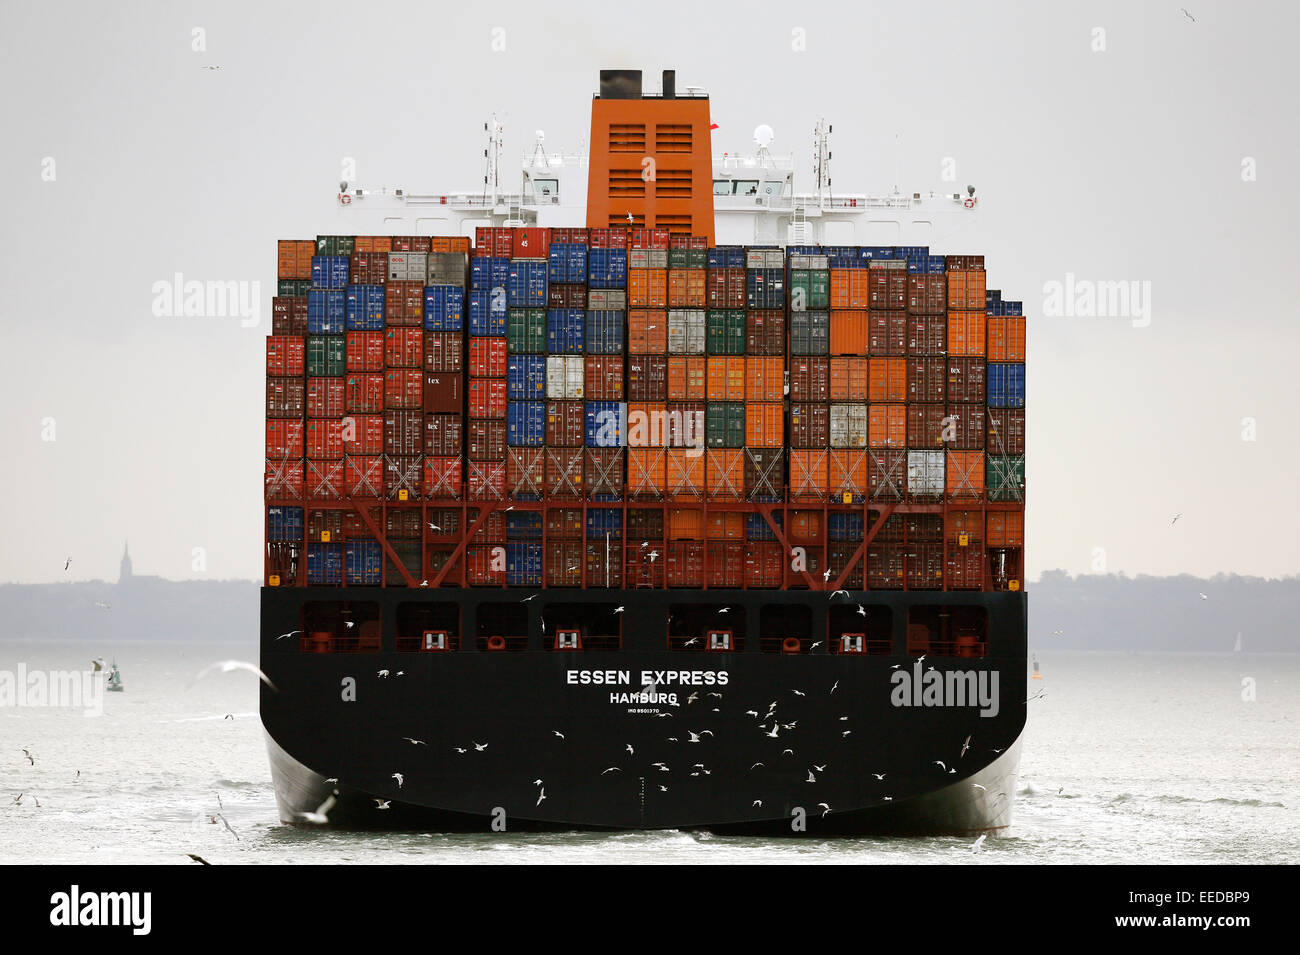 Essen Express Container-Schiff Segel in The Solent nach dem Ausscheiden aus Southampton Docks in England Januar 2015 Stockfoto